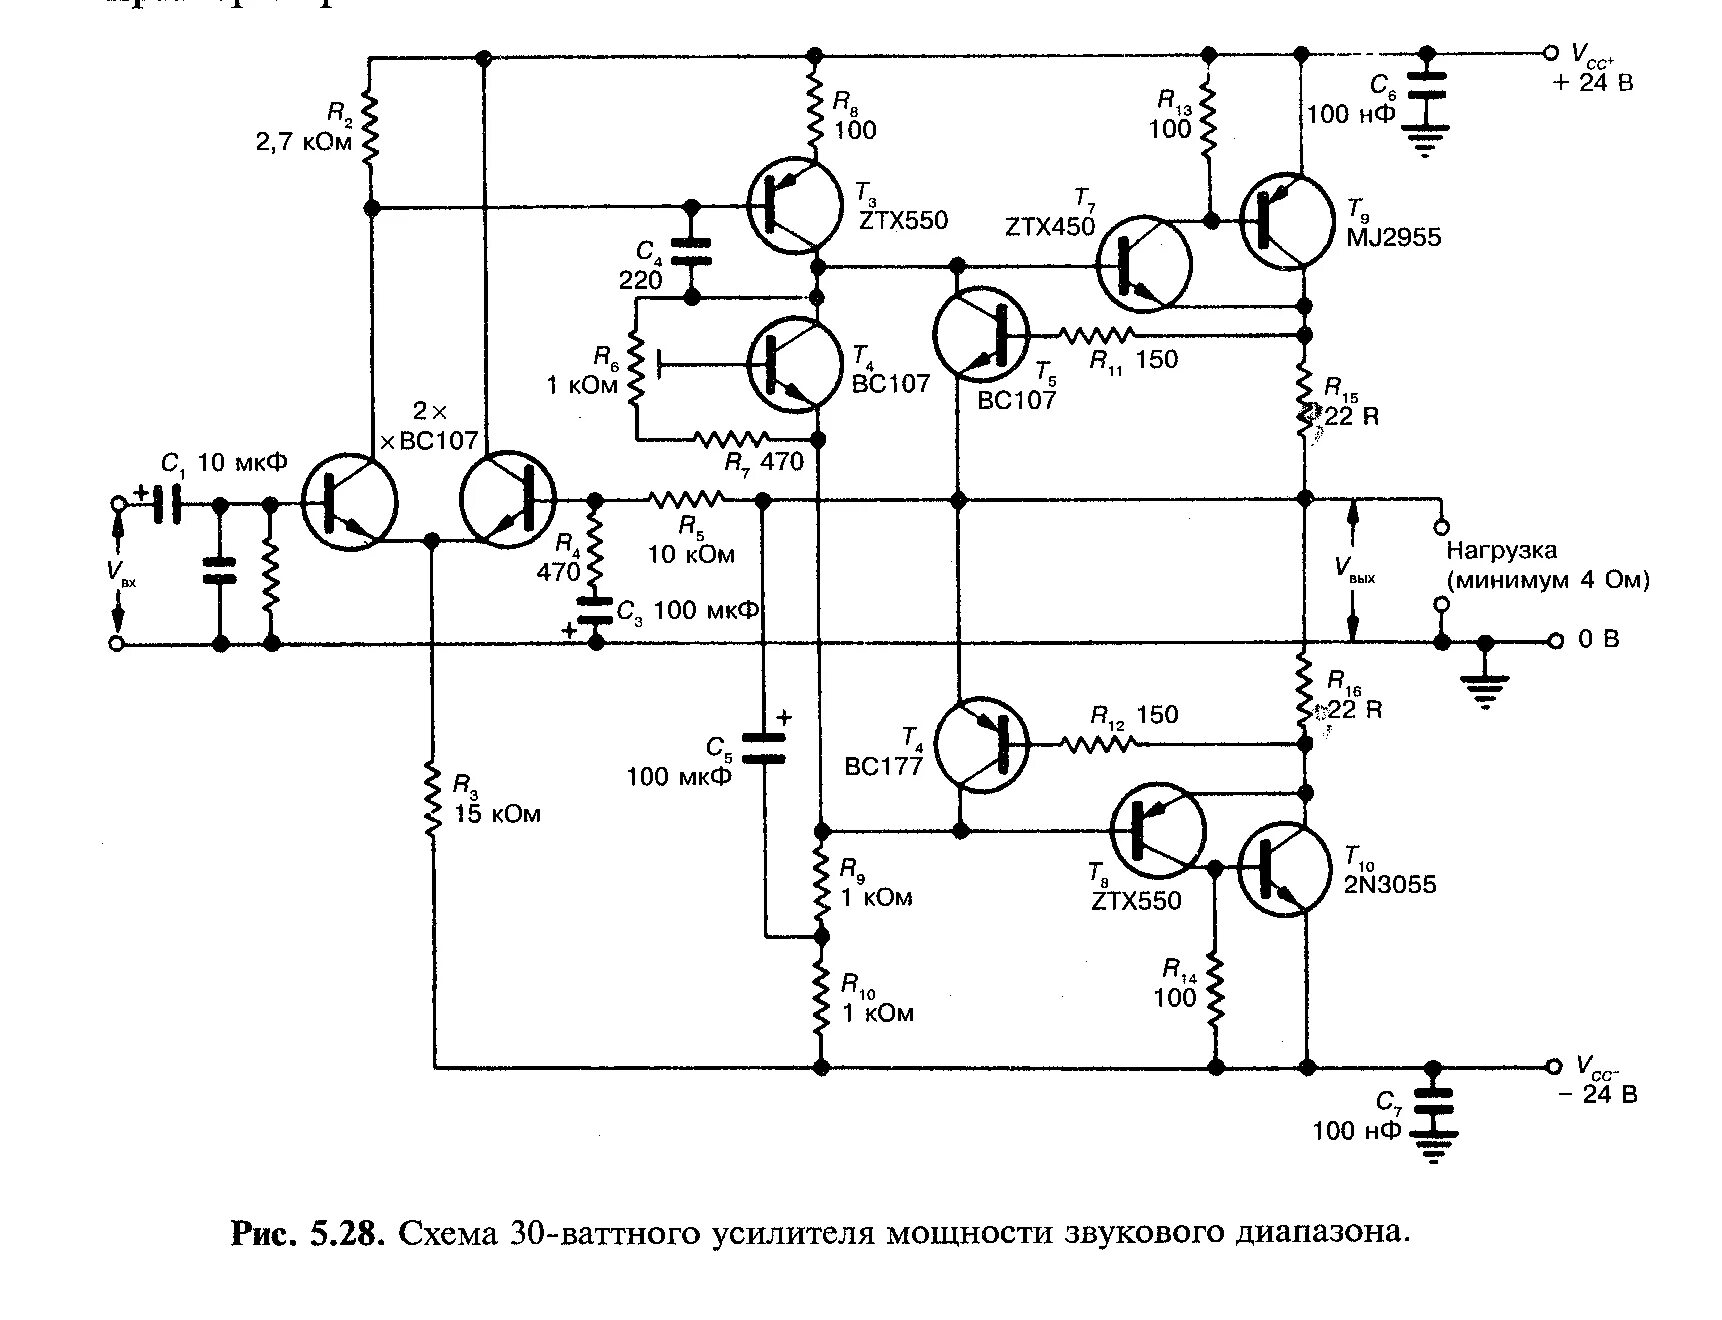 Выходные унч. Схема УМЗЧ на кт808. Схема усилителя мощности на транзисторах кт805. Схема усилителя на кт808а транзисторах. Схема усилителя на транзисторах кт802а.